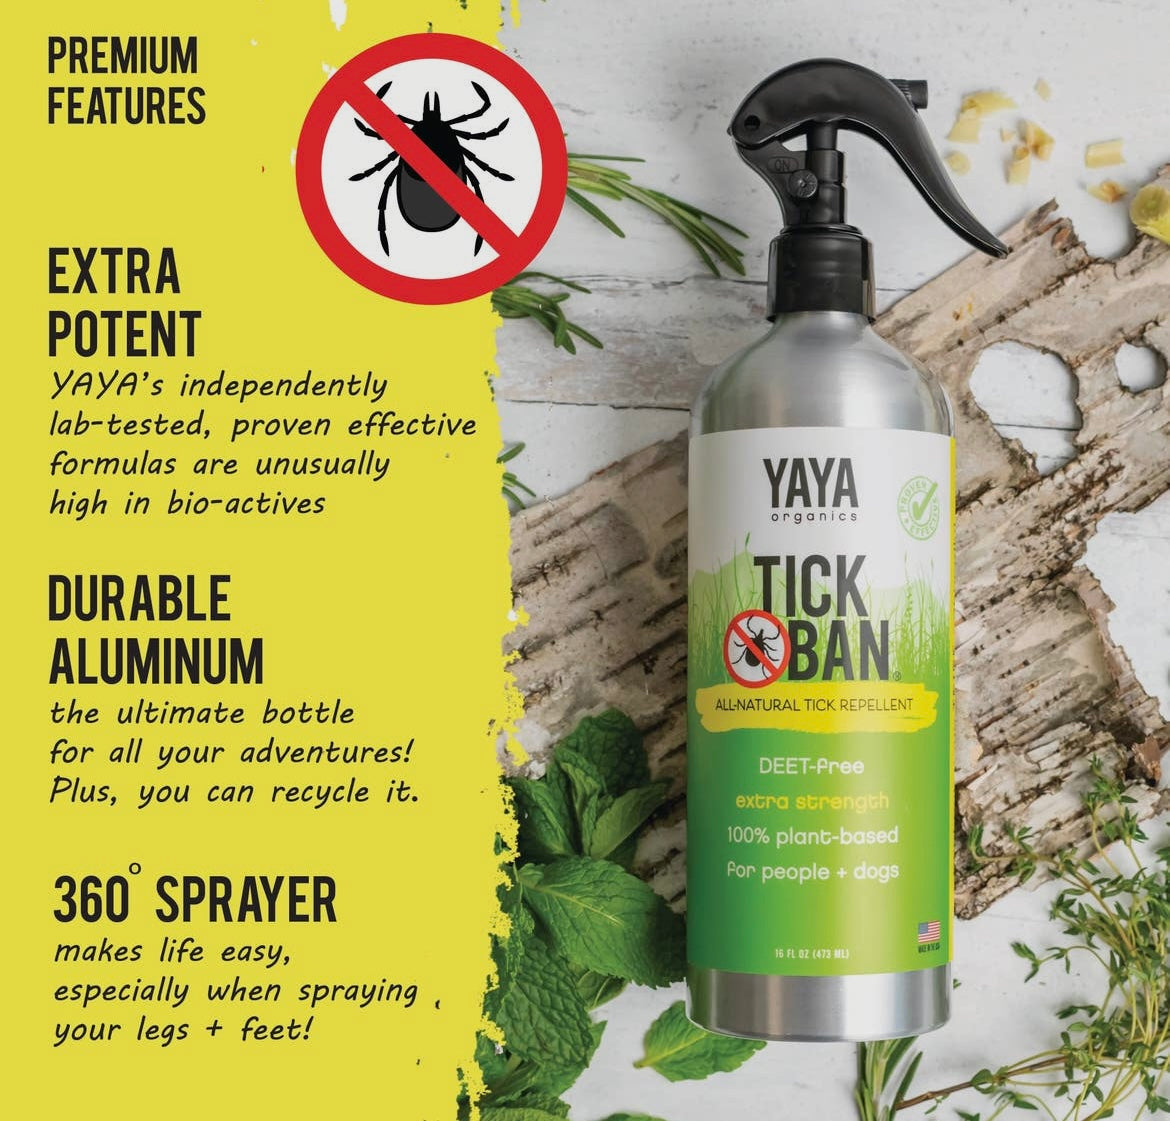 Tick Ban All-Natural Tick Repellent